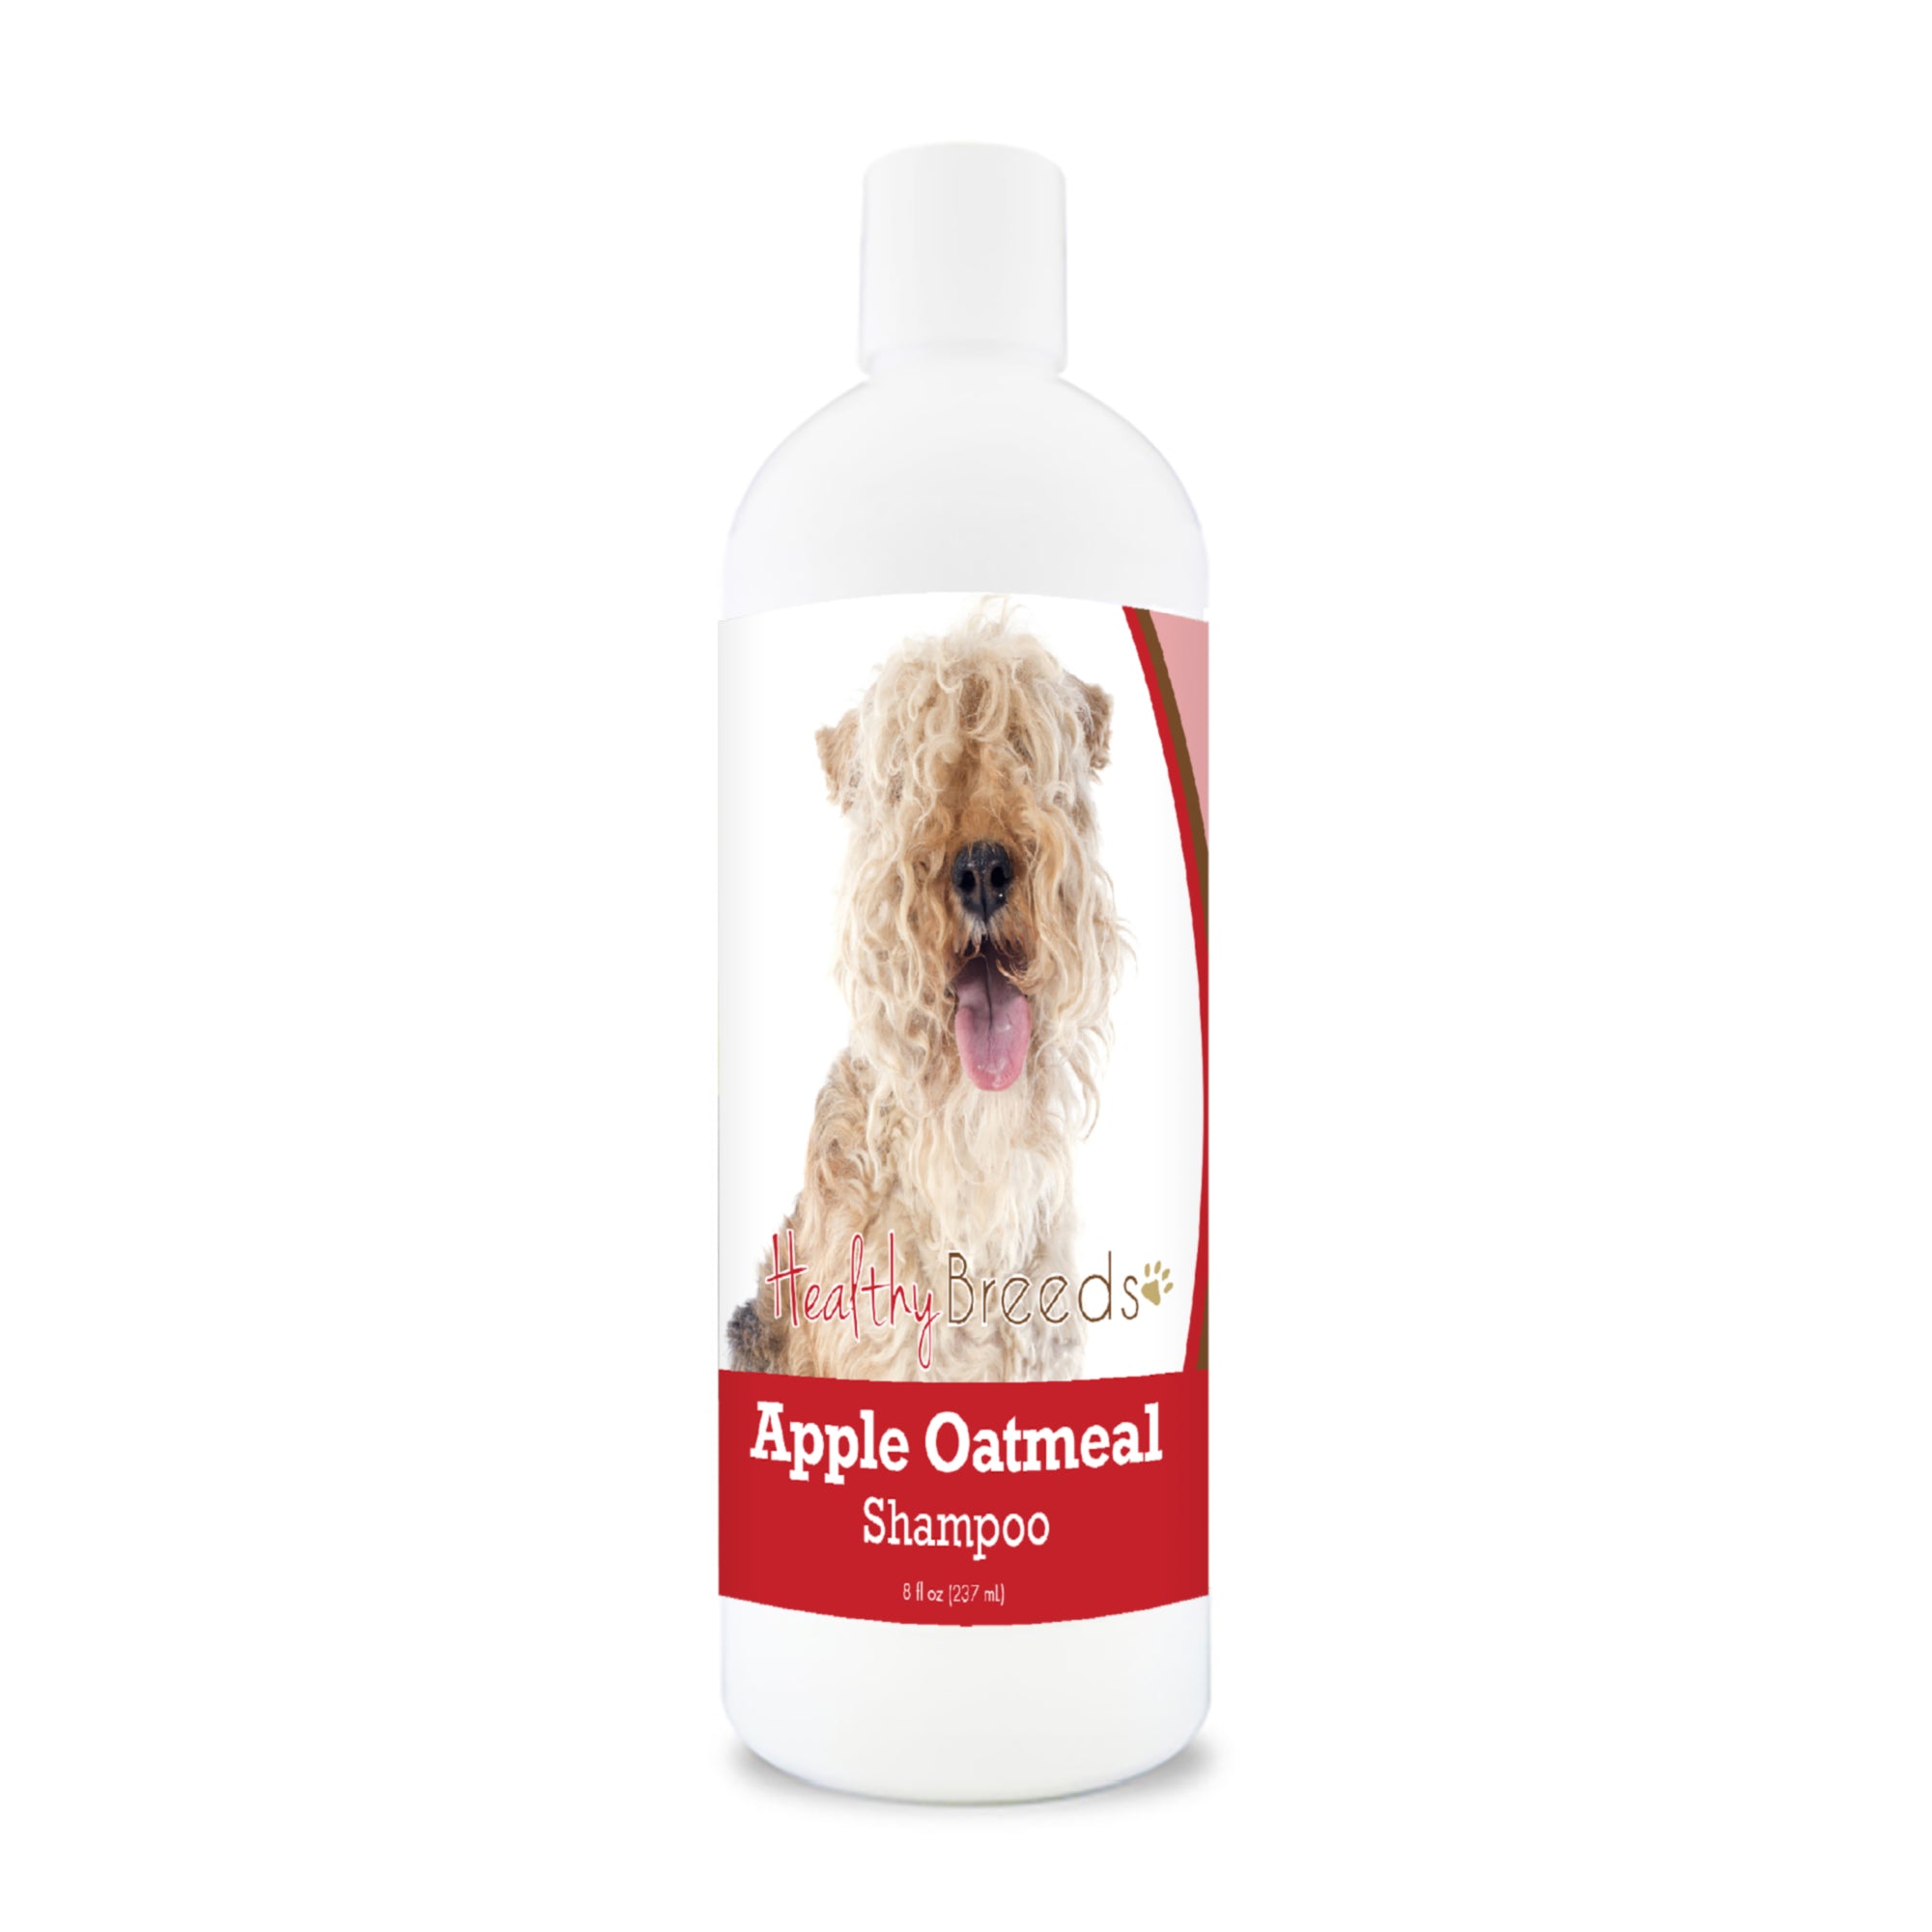 Lakeland Terrier Apple Oatmeal Shampoo 8 oz